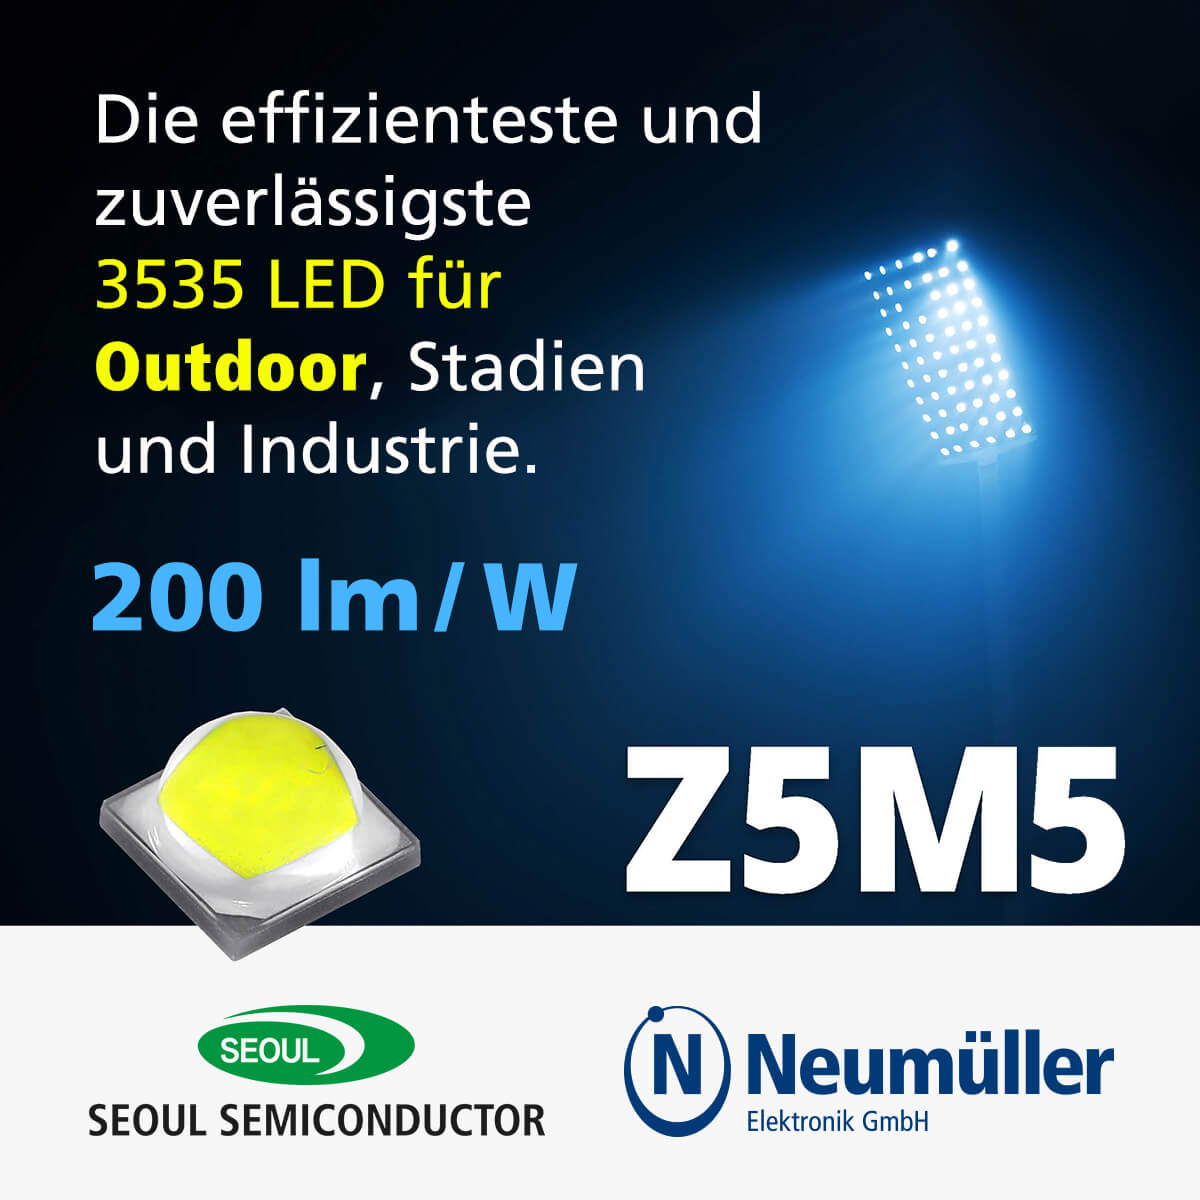 Z5M5: 3535 High Power LED for Outdoor Lighting